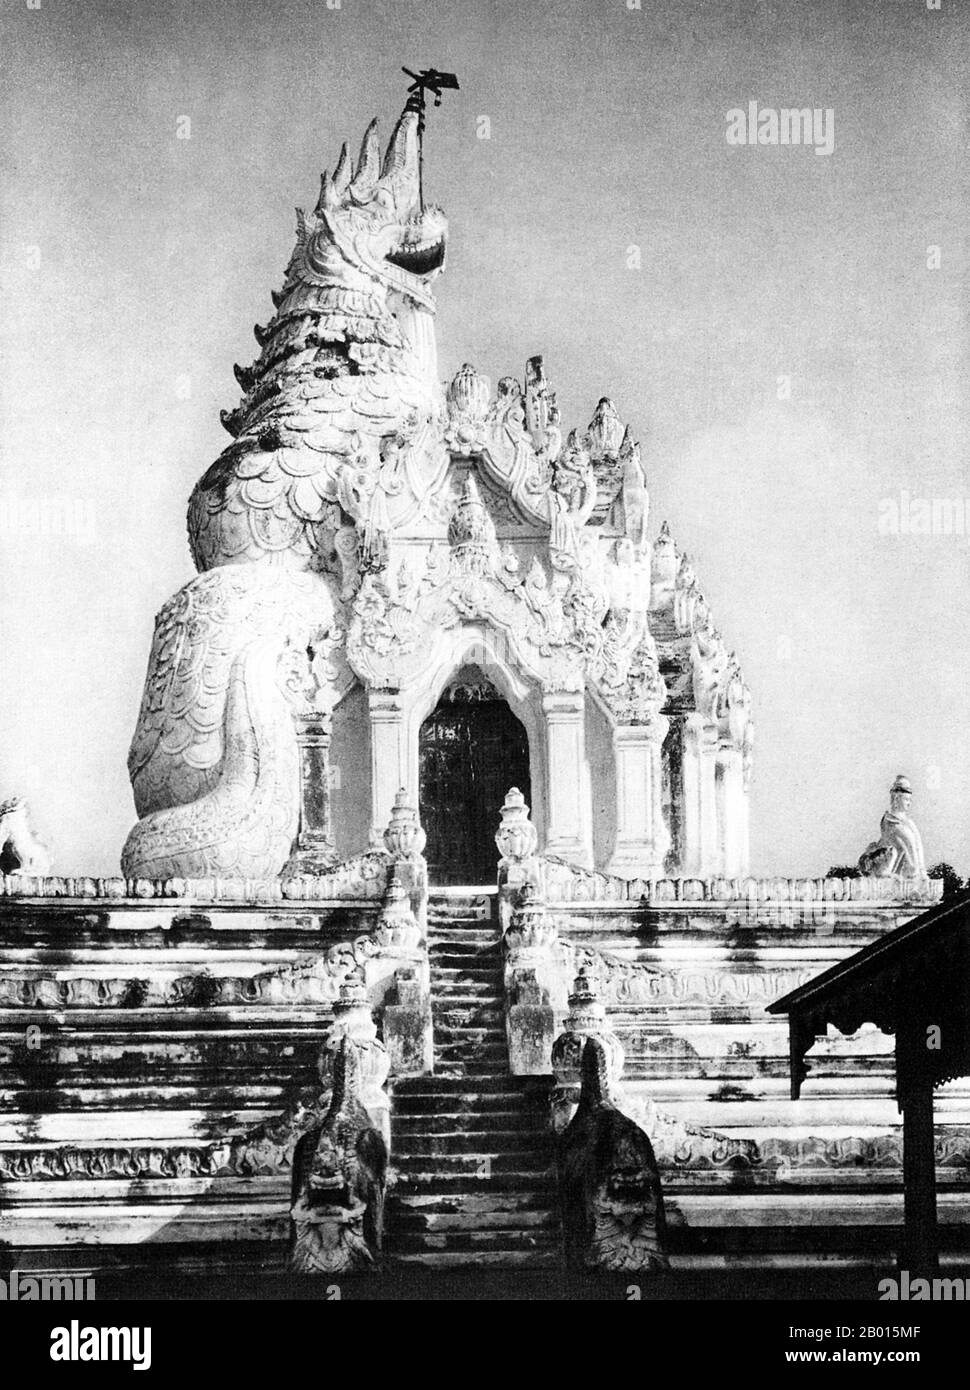 Birmania/Myanmar: La Pagoda Ava a forma di drago, c. AVA fu capitale della Birmania dal 1364 al 1841 e fu fondata da re Thadominbya su un'isola artificiale alla confluenza dell'Irrawaddy e del Myitnge creato scavando un canale che collega i due fiumi. Prima di questo, Sagaing era stato capitale, ma dopo che Sagaing cadde allo Shan, la corte si spostò attraverso il fiume ad Ava. La cultura di Pagan fu rianimata e seguì una grande epoca di letteratura birmana. Il regno mancava tuttavia di confini facilmente difendibili, e fu sopravagato dallo Shan nel 1527. Foto Stock